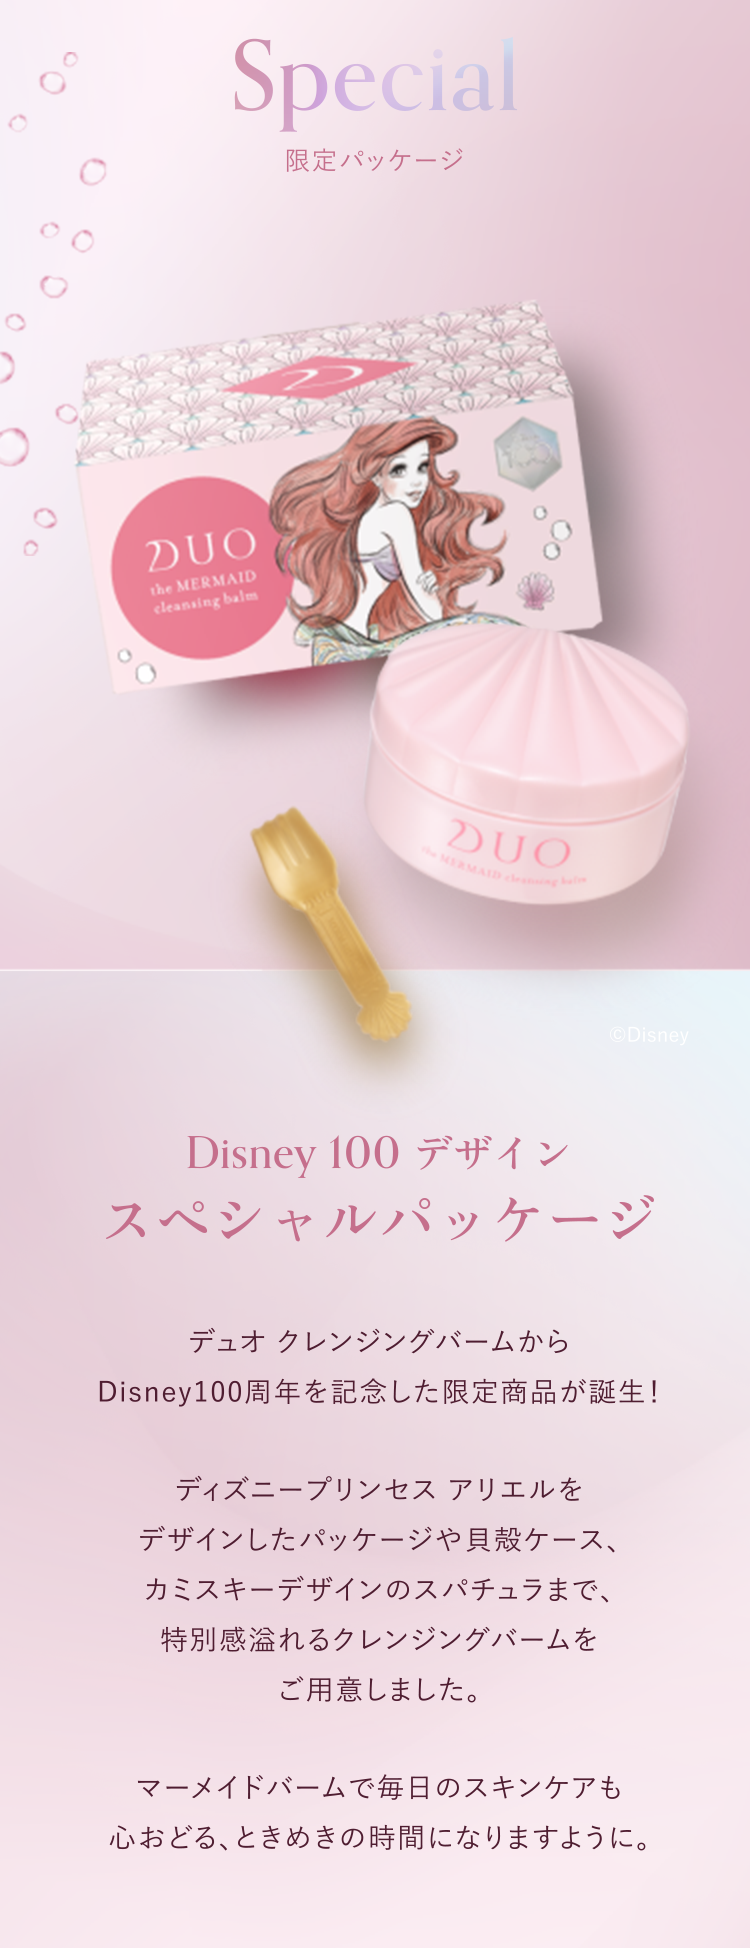 Disney 100 デザイン DUO公式 デュオ ザ マーメイド クレンジングバーム アリエル メイク落とし クレンジング 洗顔 毛穴汚れ 限定発売  母の日